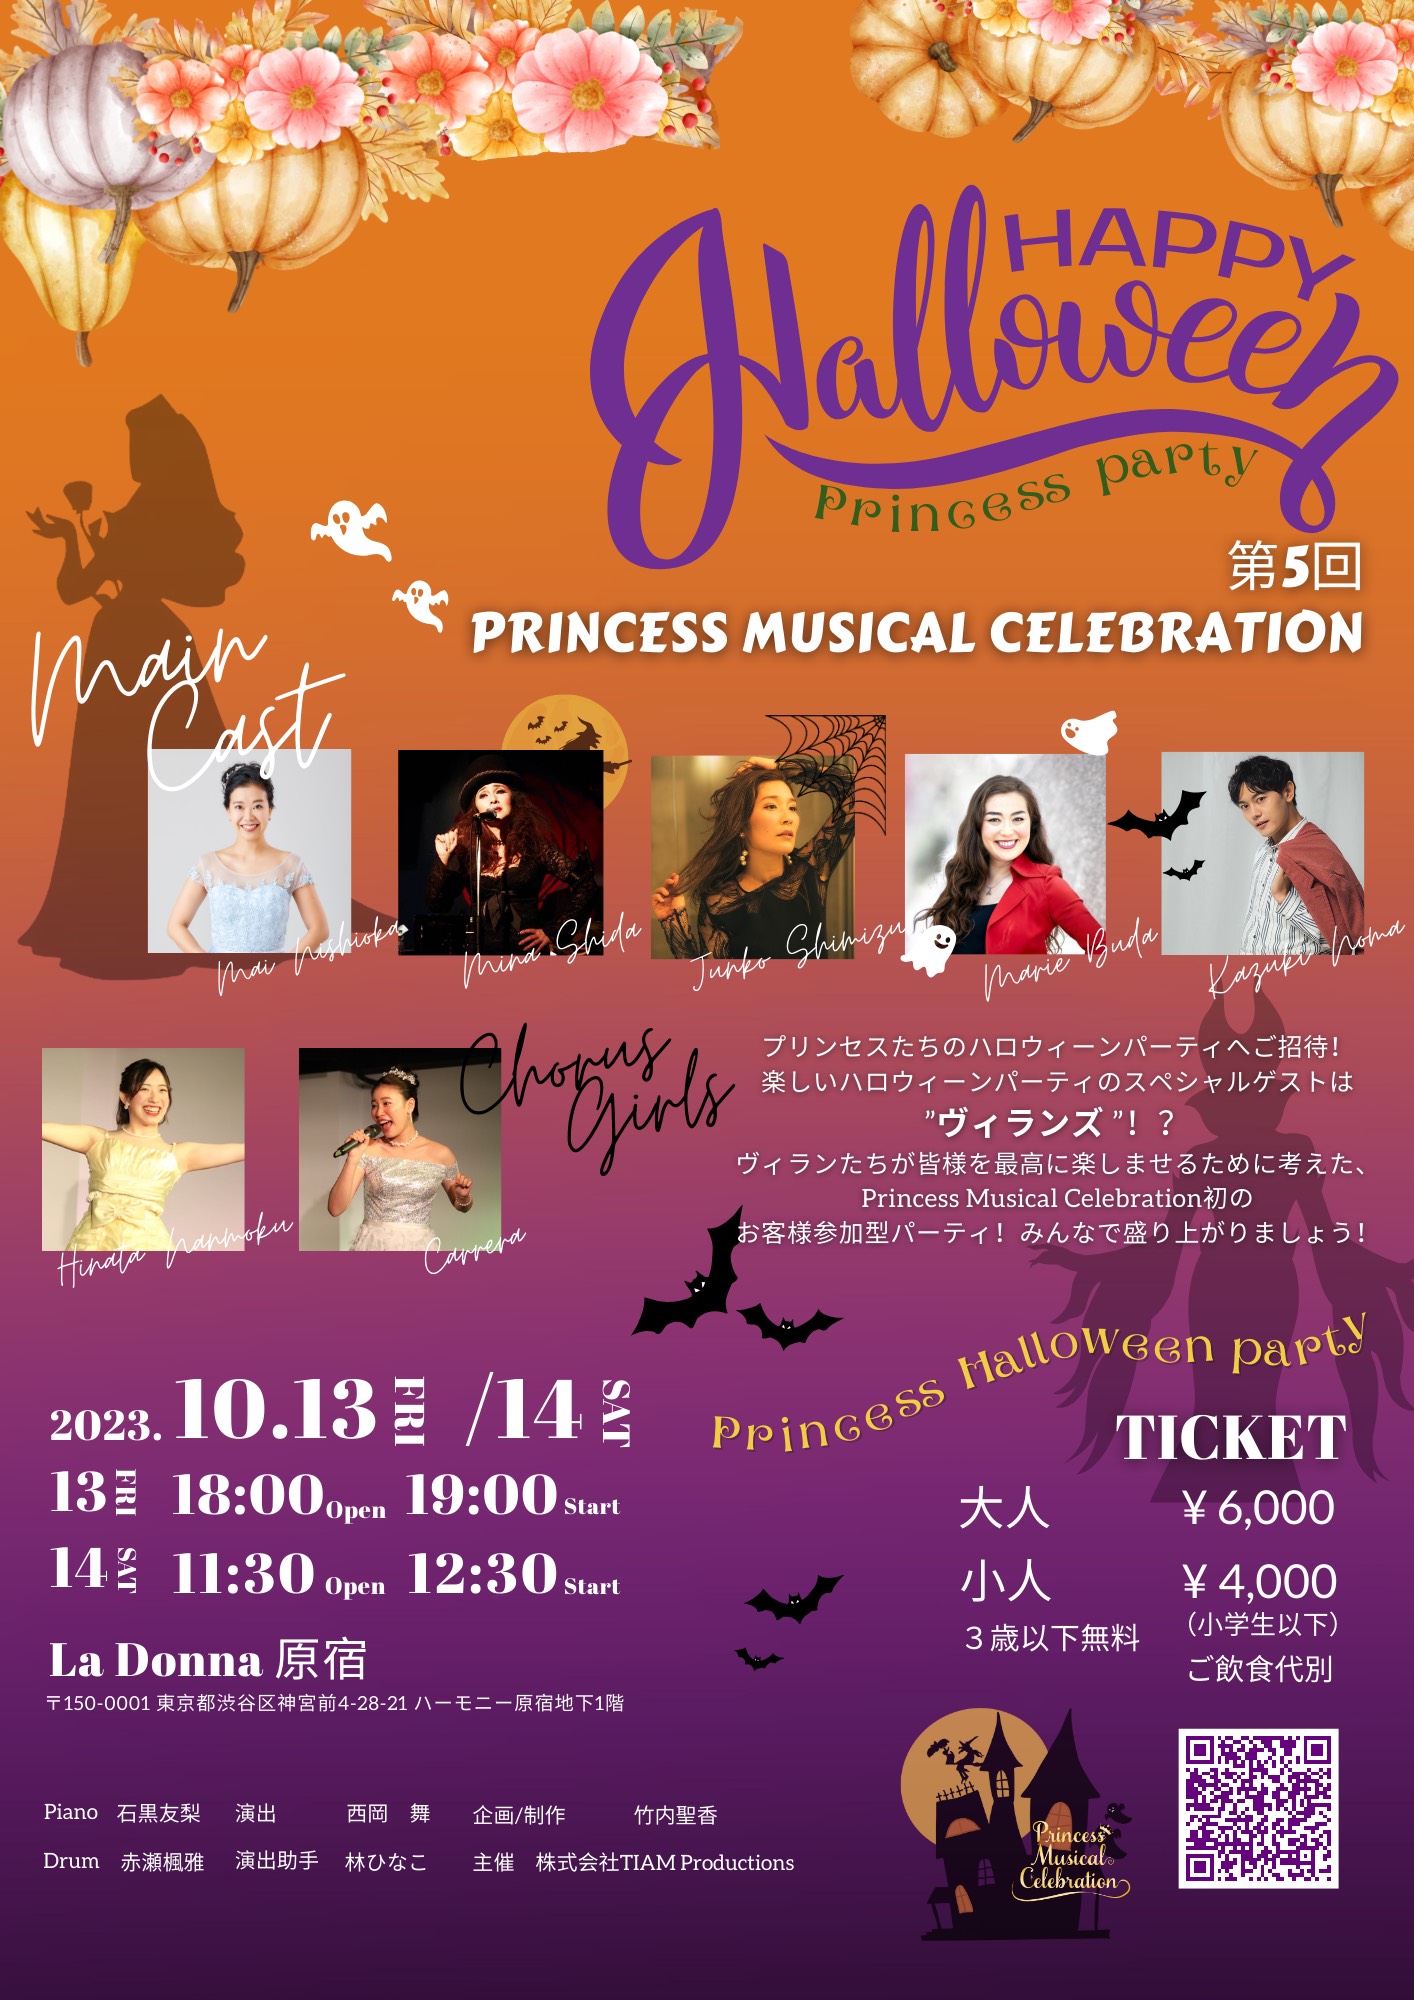 第5回Princess Musical Celebration  🎃Happy Halloween Party 🎃